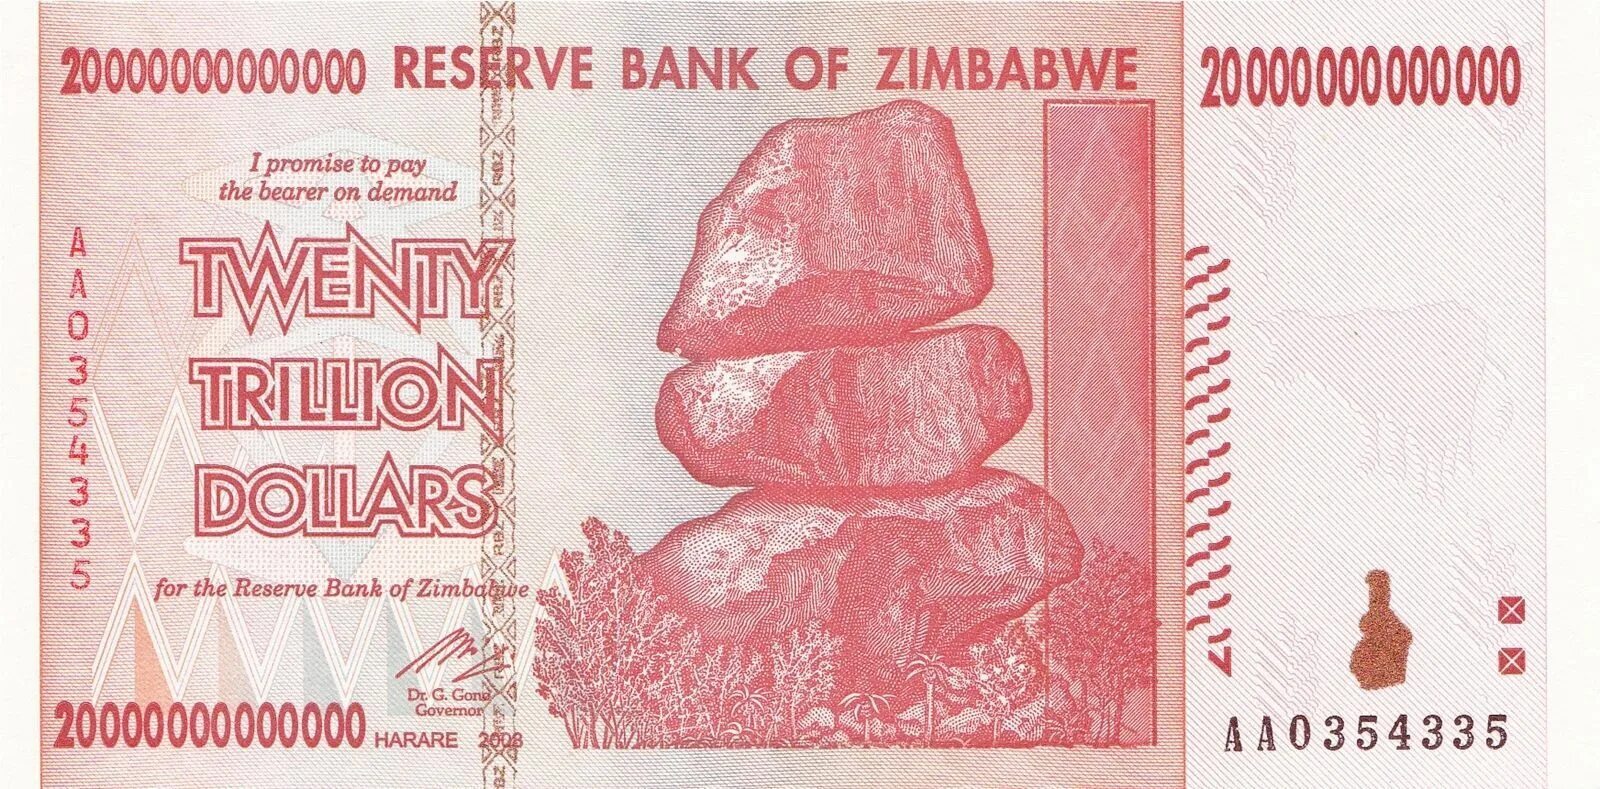 5 плюс тысяч. Банкнота Зимбабве 5000000000. Самая большая купюра Зимбабве. 1 Триллион долларов Зимбабве. 100 000 000 000 000 Зимбабвийских долларов.